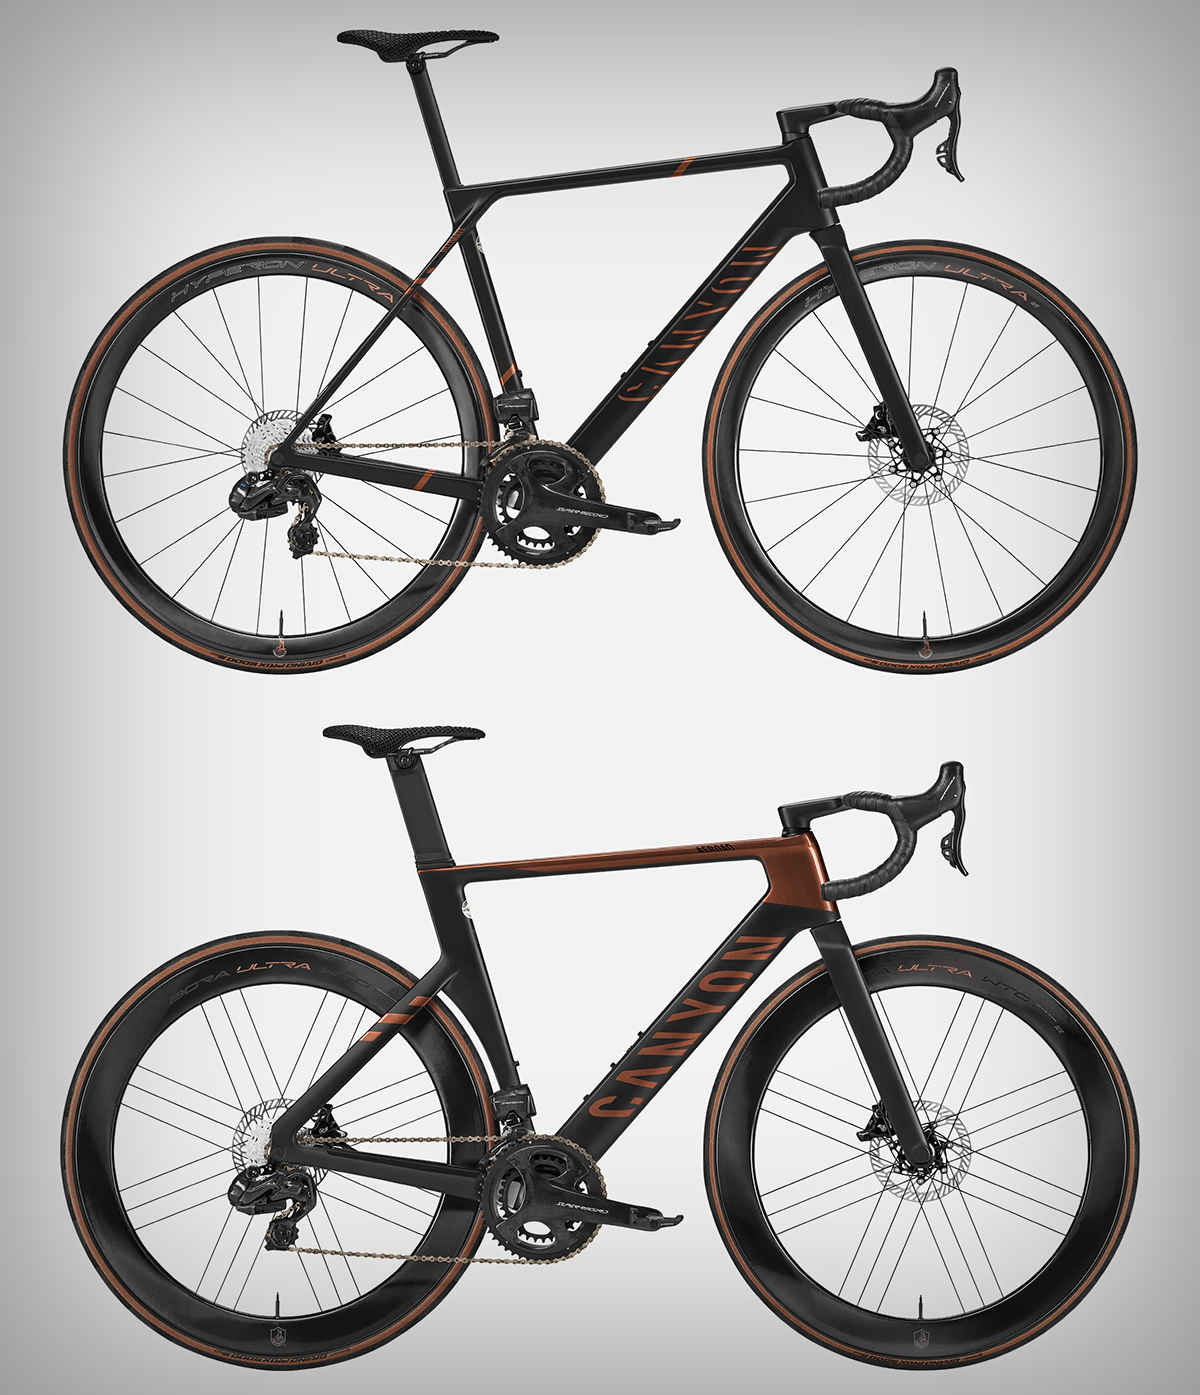 Canyon X Campagnolo, dos exclusivas bicicletas con grupo Campagnolo de gama alta y acabados prémium